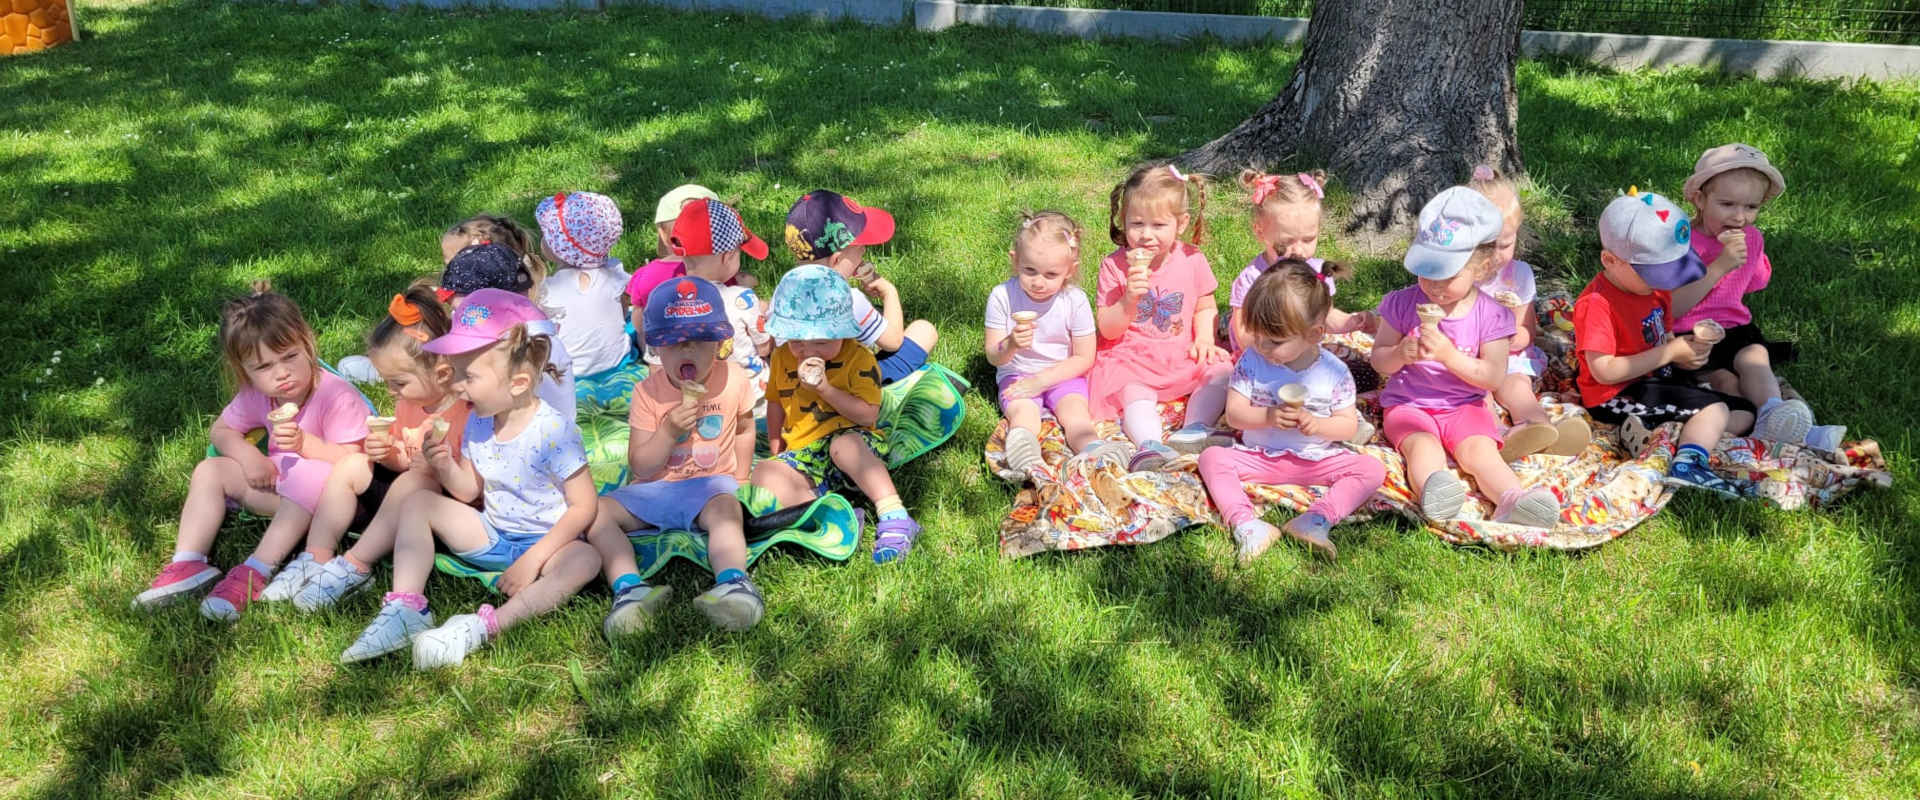 Dzieci pod drzewem jedzą słodycze